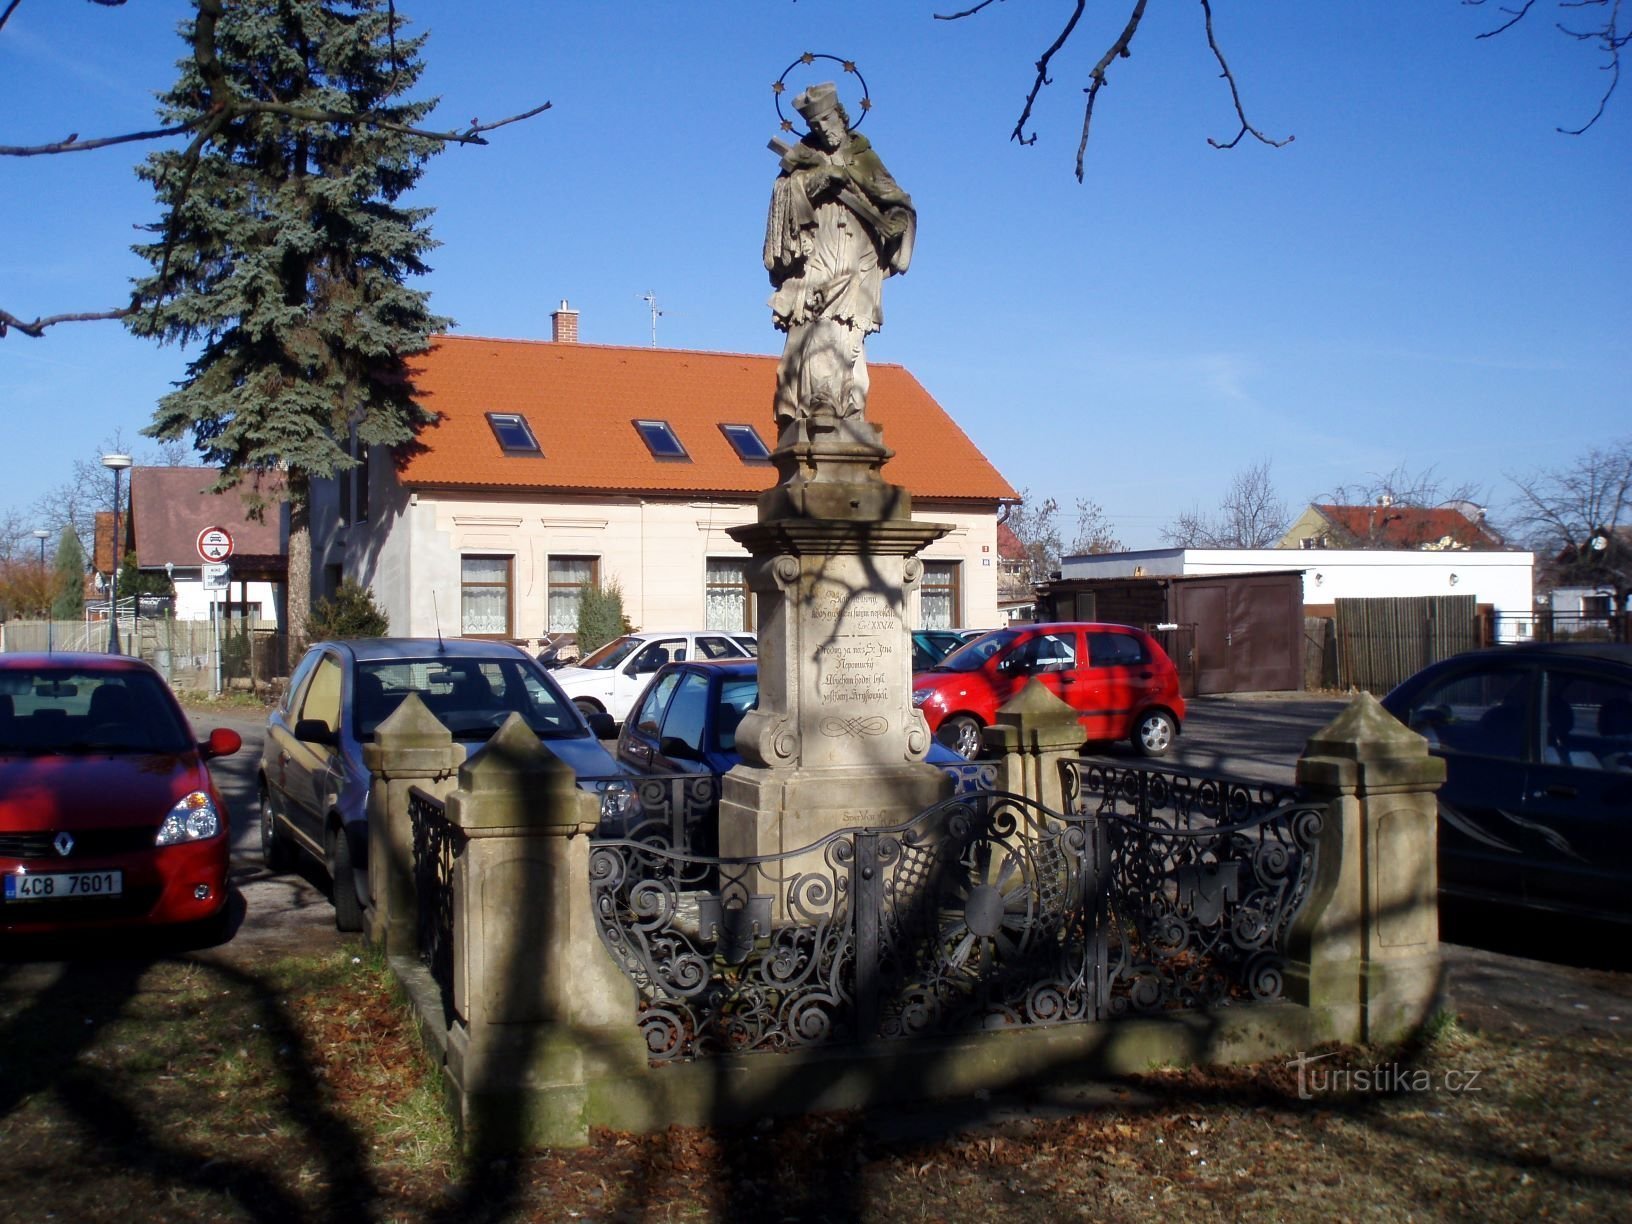 Статуя св. Иоанн Непомуцкий в Пухове (Градец Кралове, 24.3.2011)